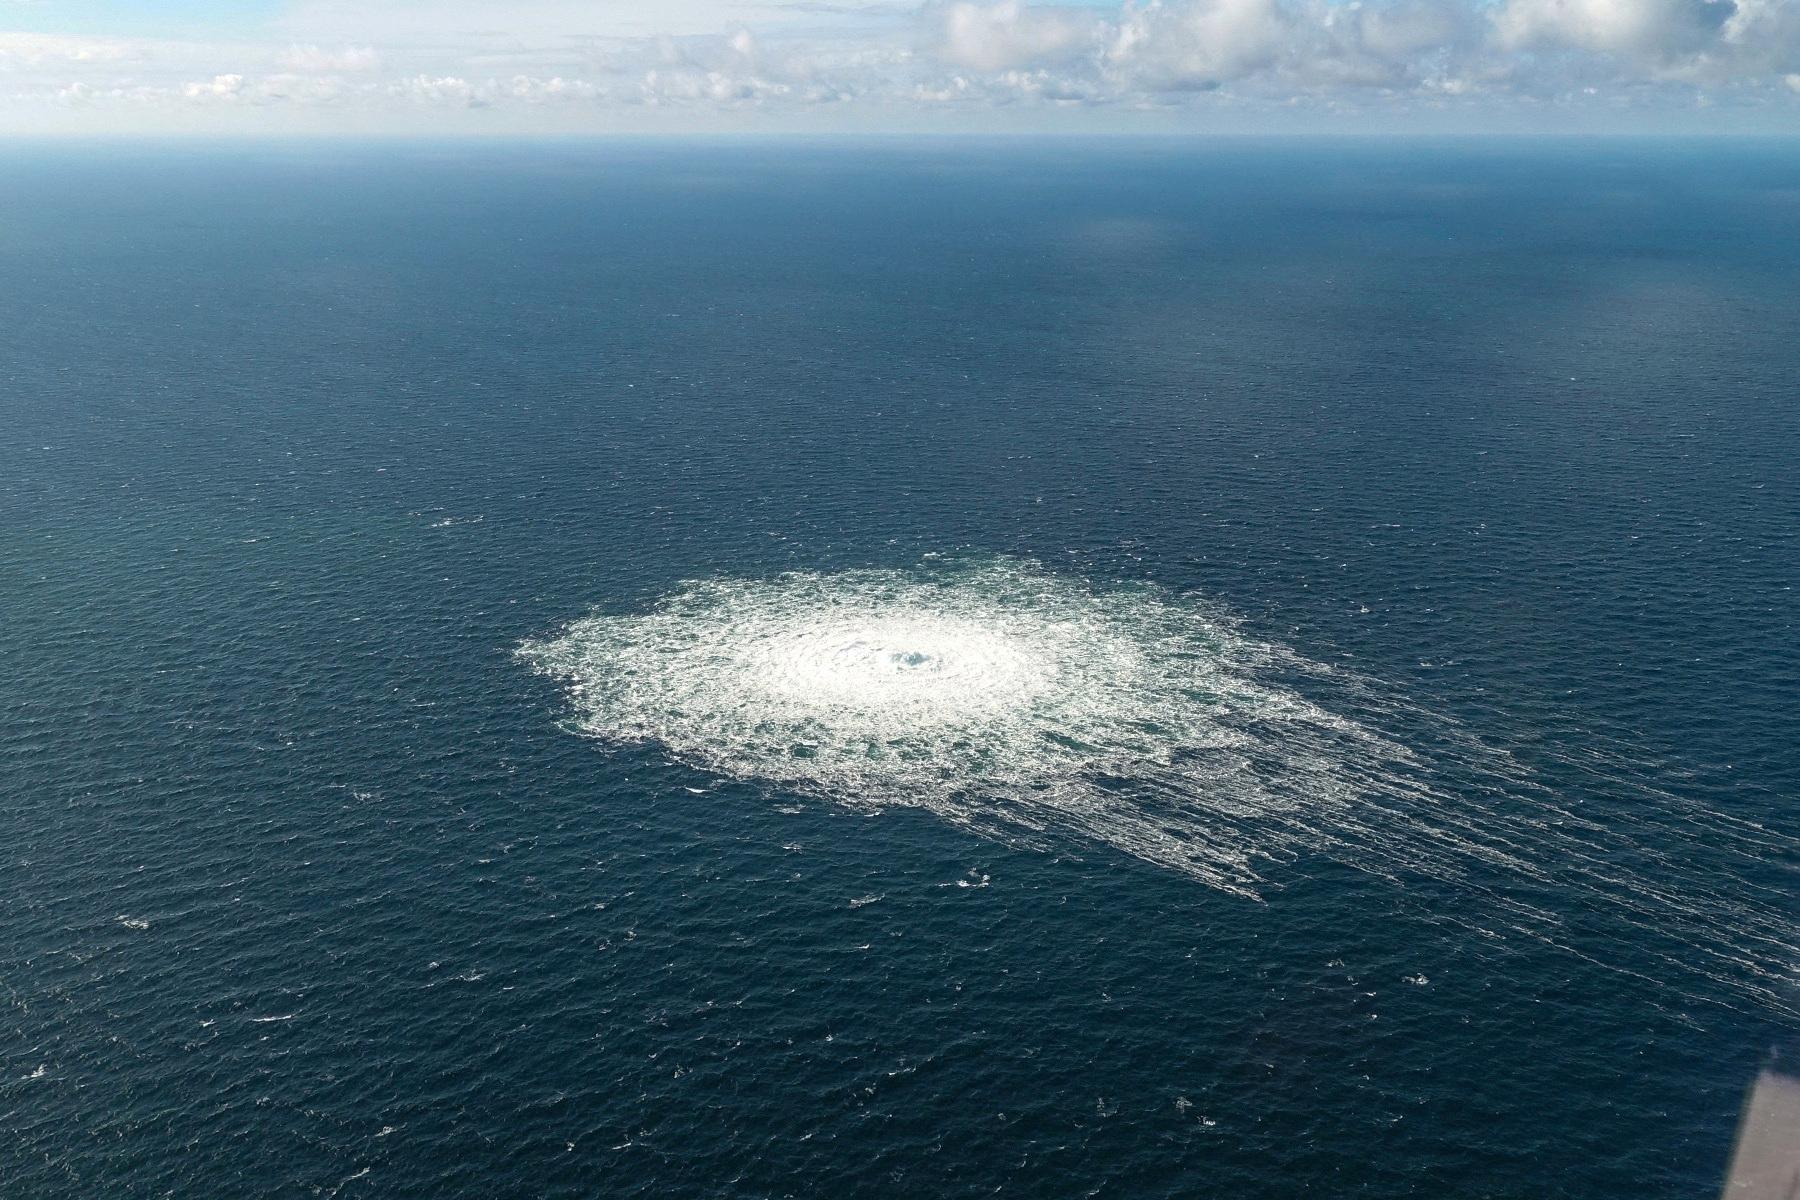 Esplosione: compaiono bolle sulla superficie dopo un'esplosione nel Mar Baltico.